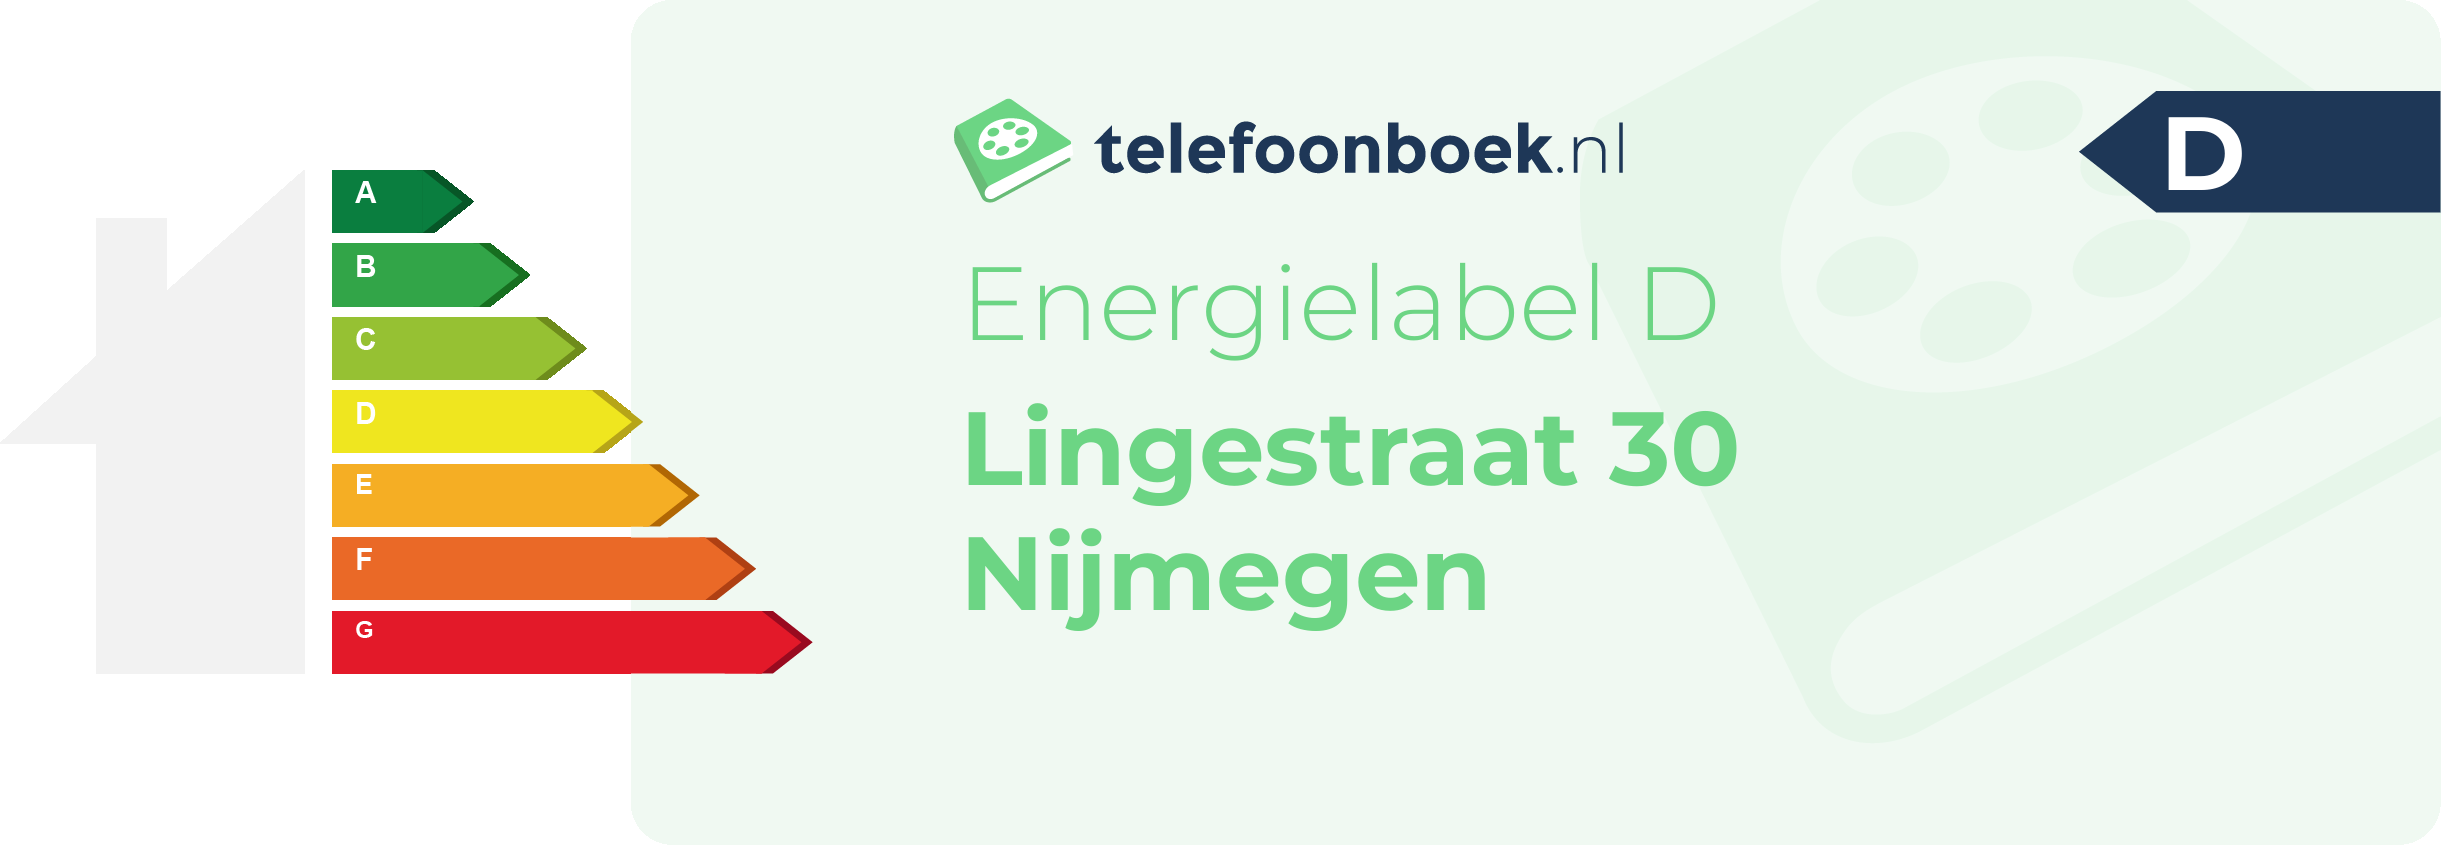 Energielabel Lingestraat 30 Nijmegen